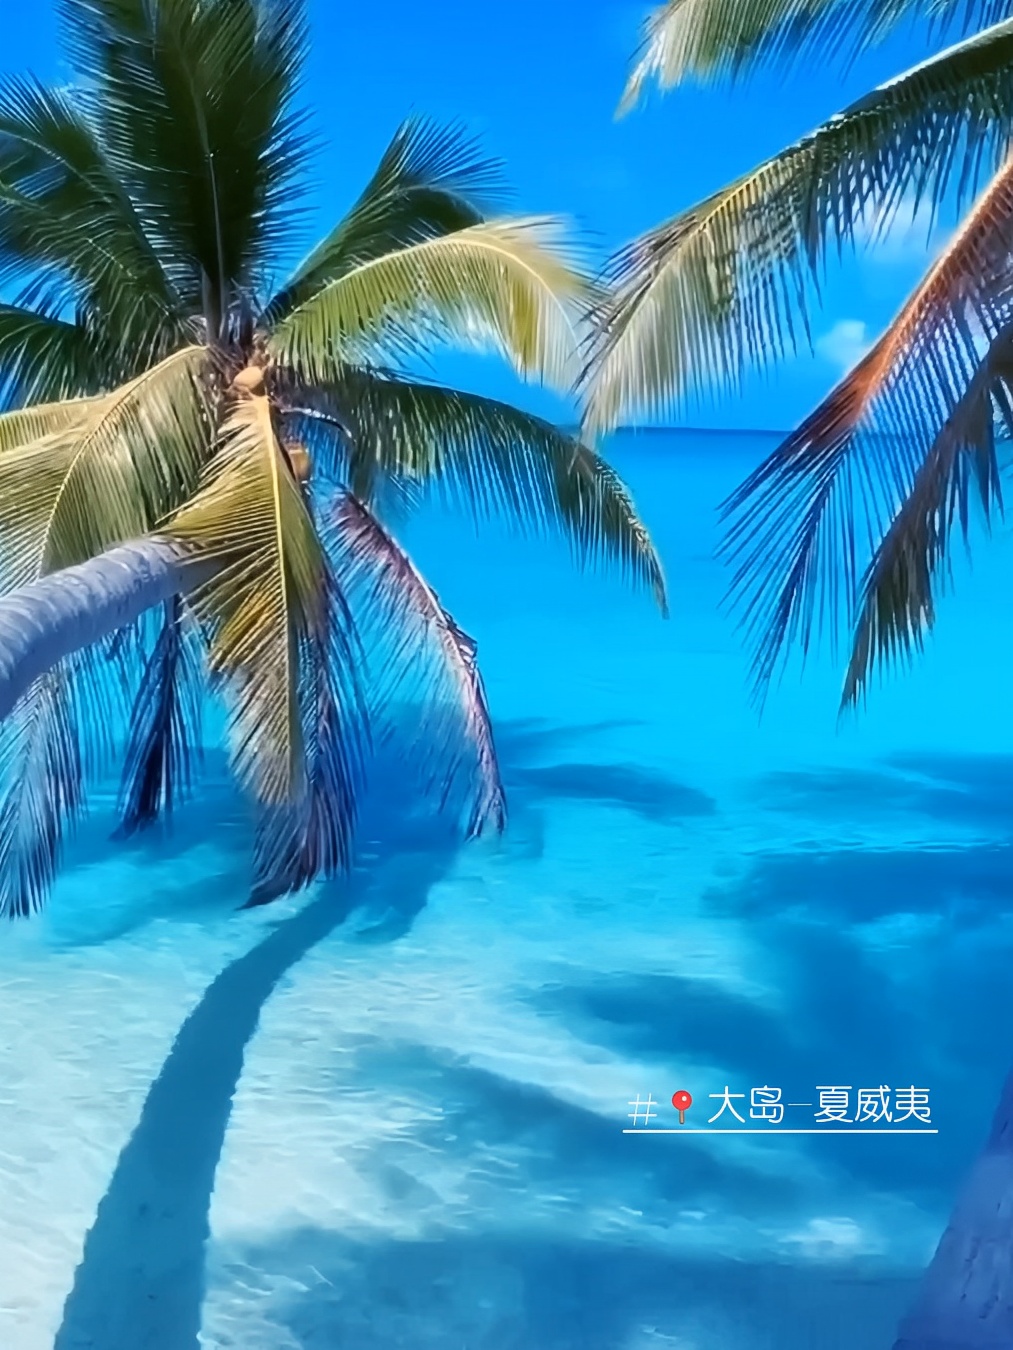 蓝天白云椰树鲨鱼海景沙滩